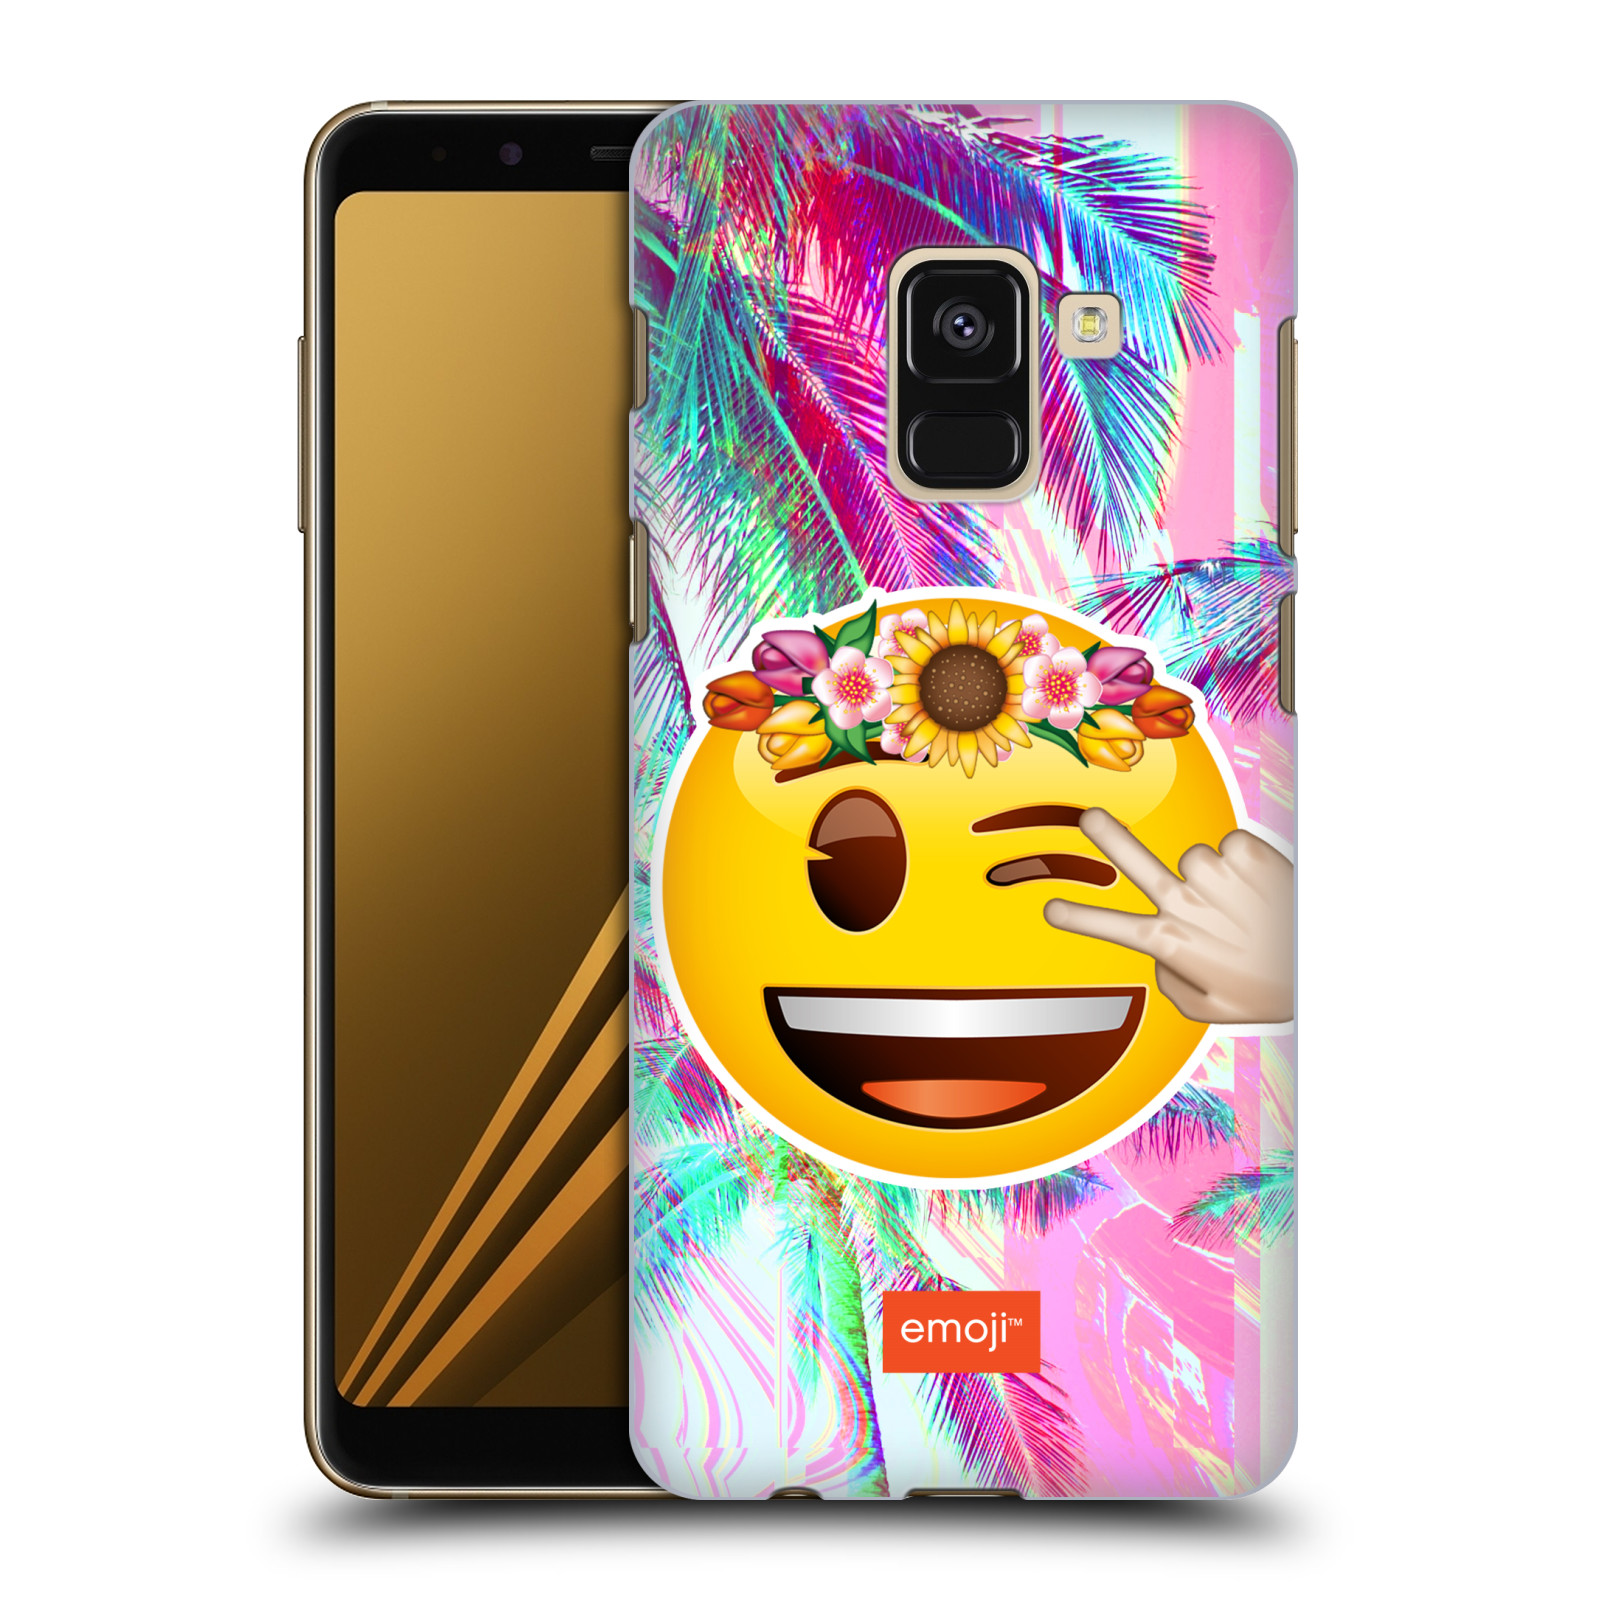 Pouzdro na mobil Samsung Galaxy A8+ 2018, A8 PLUS 2018 - HEAD CASE - Emoji smajlík palmy a květiny